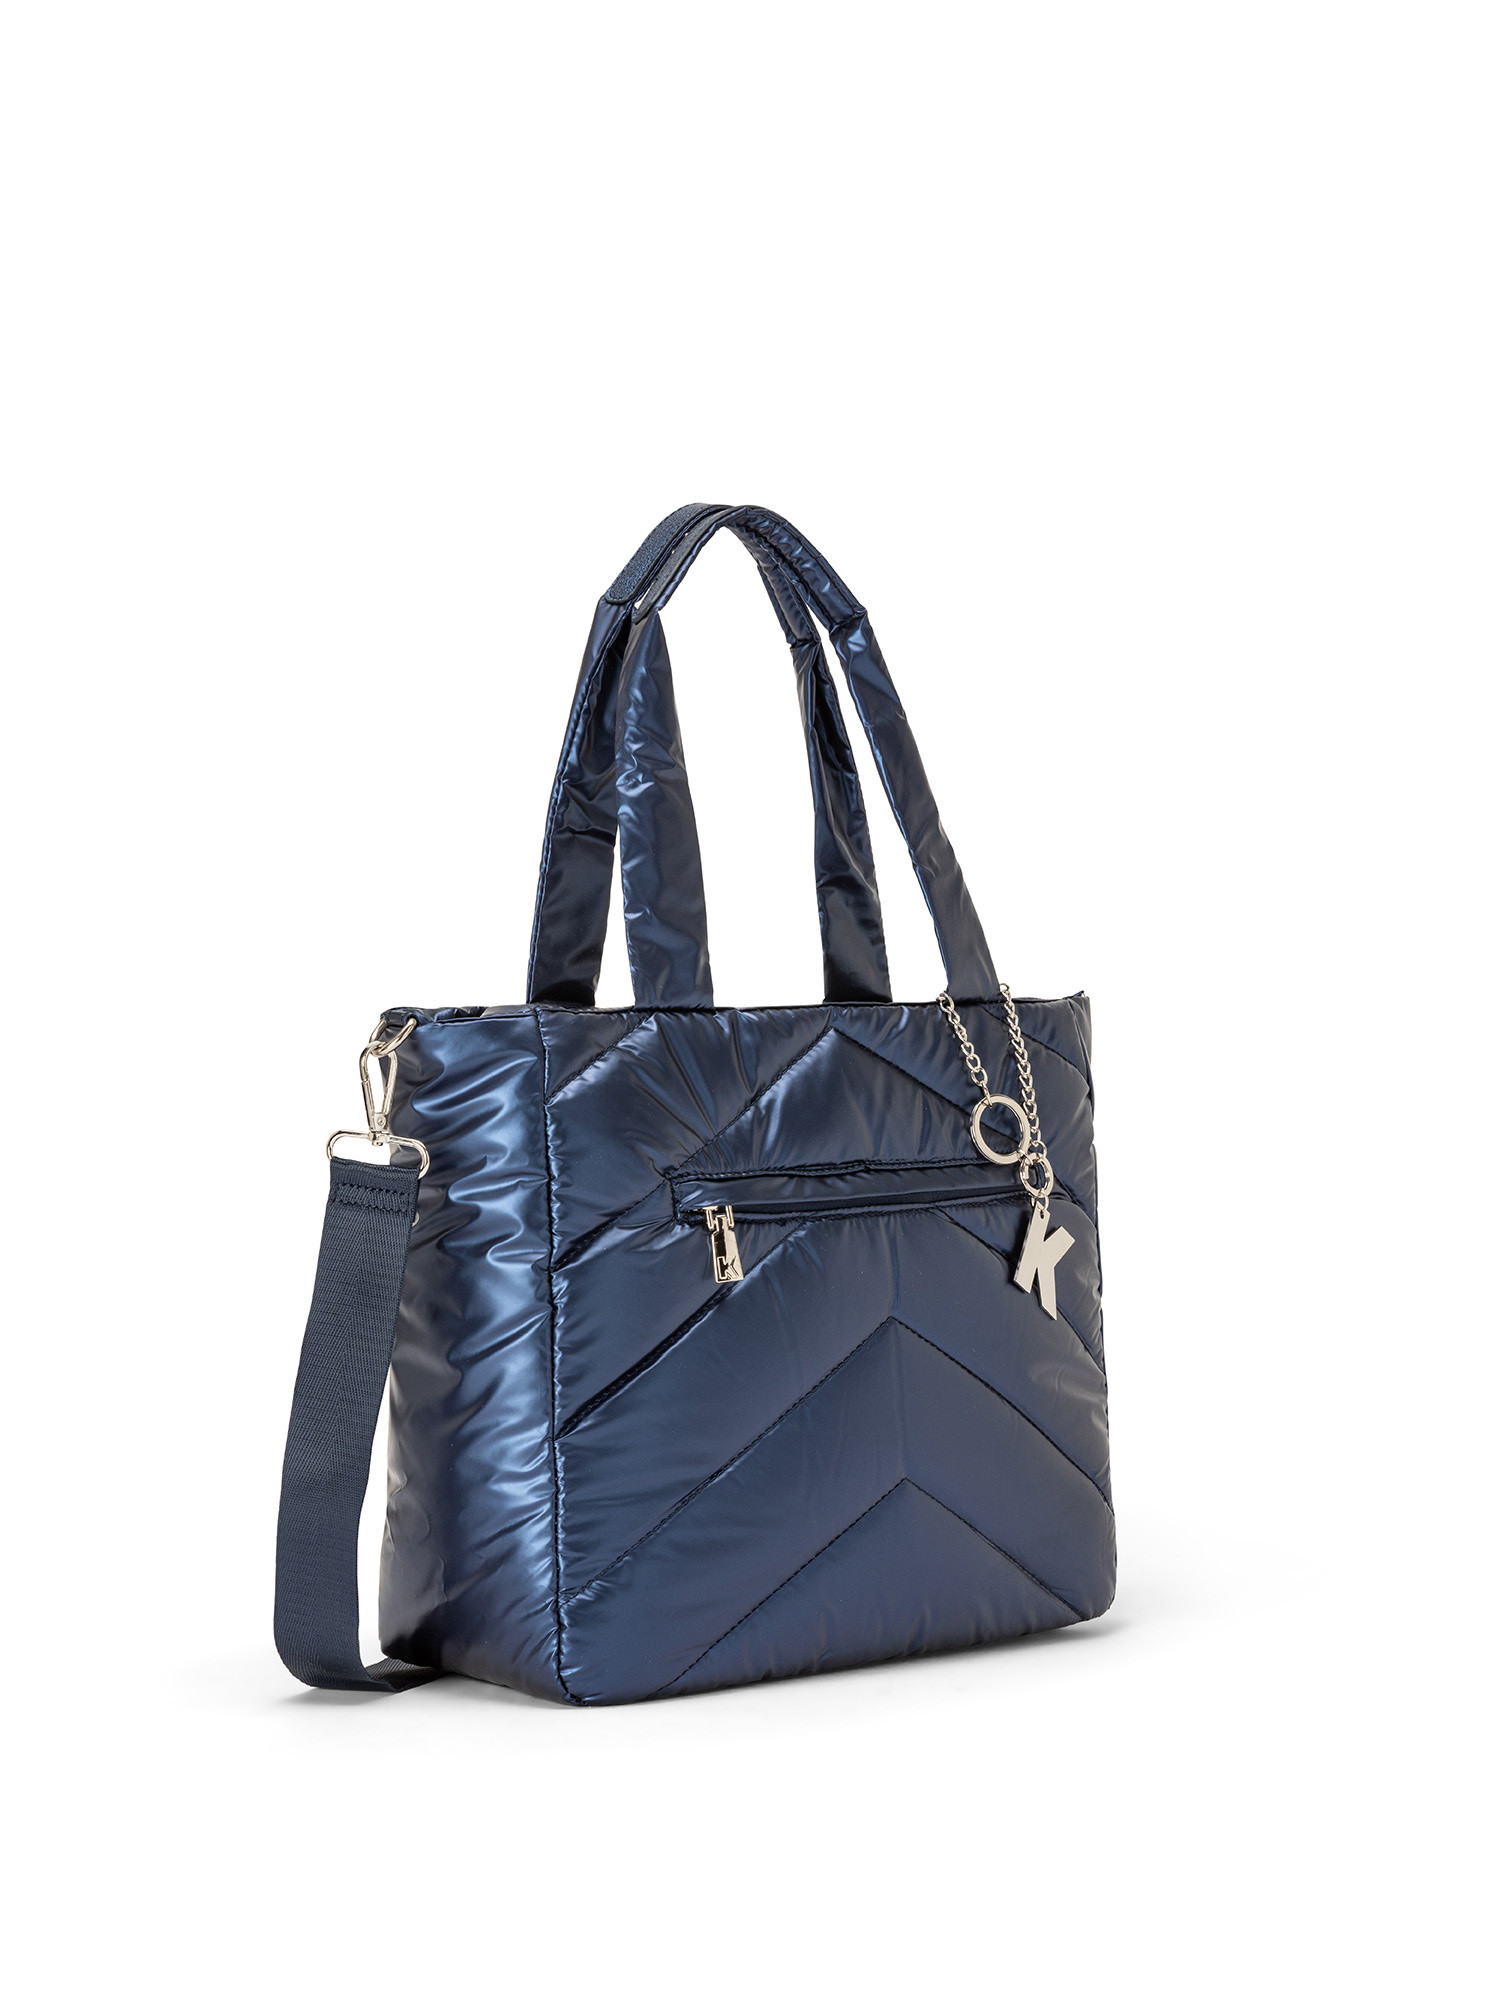 Koan - Shopping bag in nylon, Blu, large image number 1